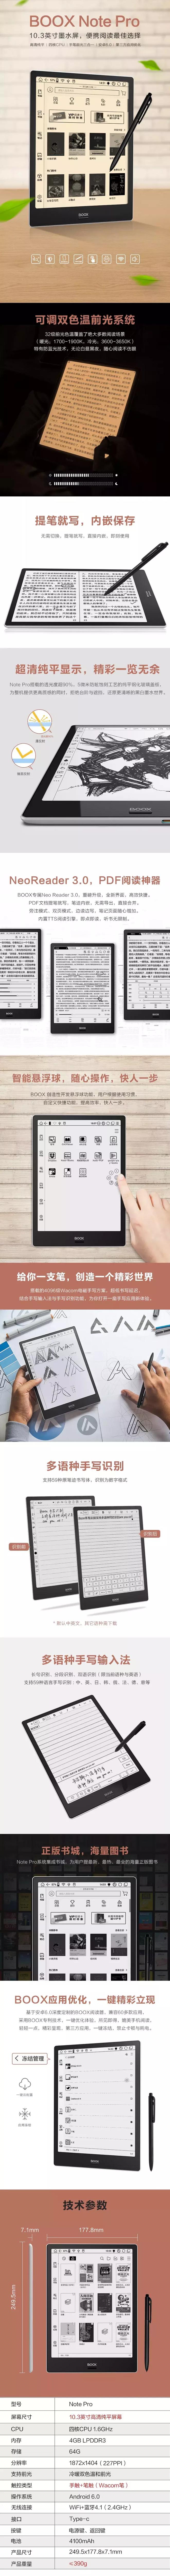 一张图看懂BOOX 新产品Note Pro电子书阅读器，你要了解的统统有！